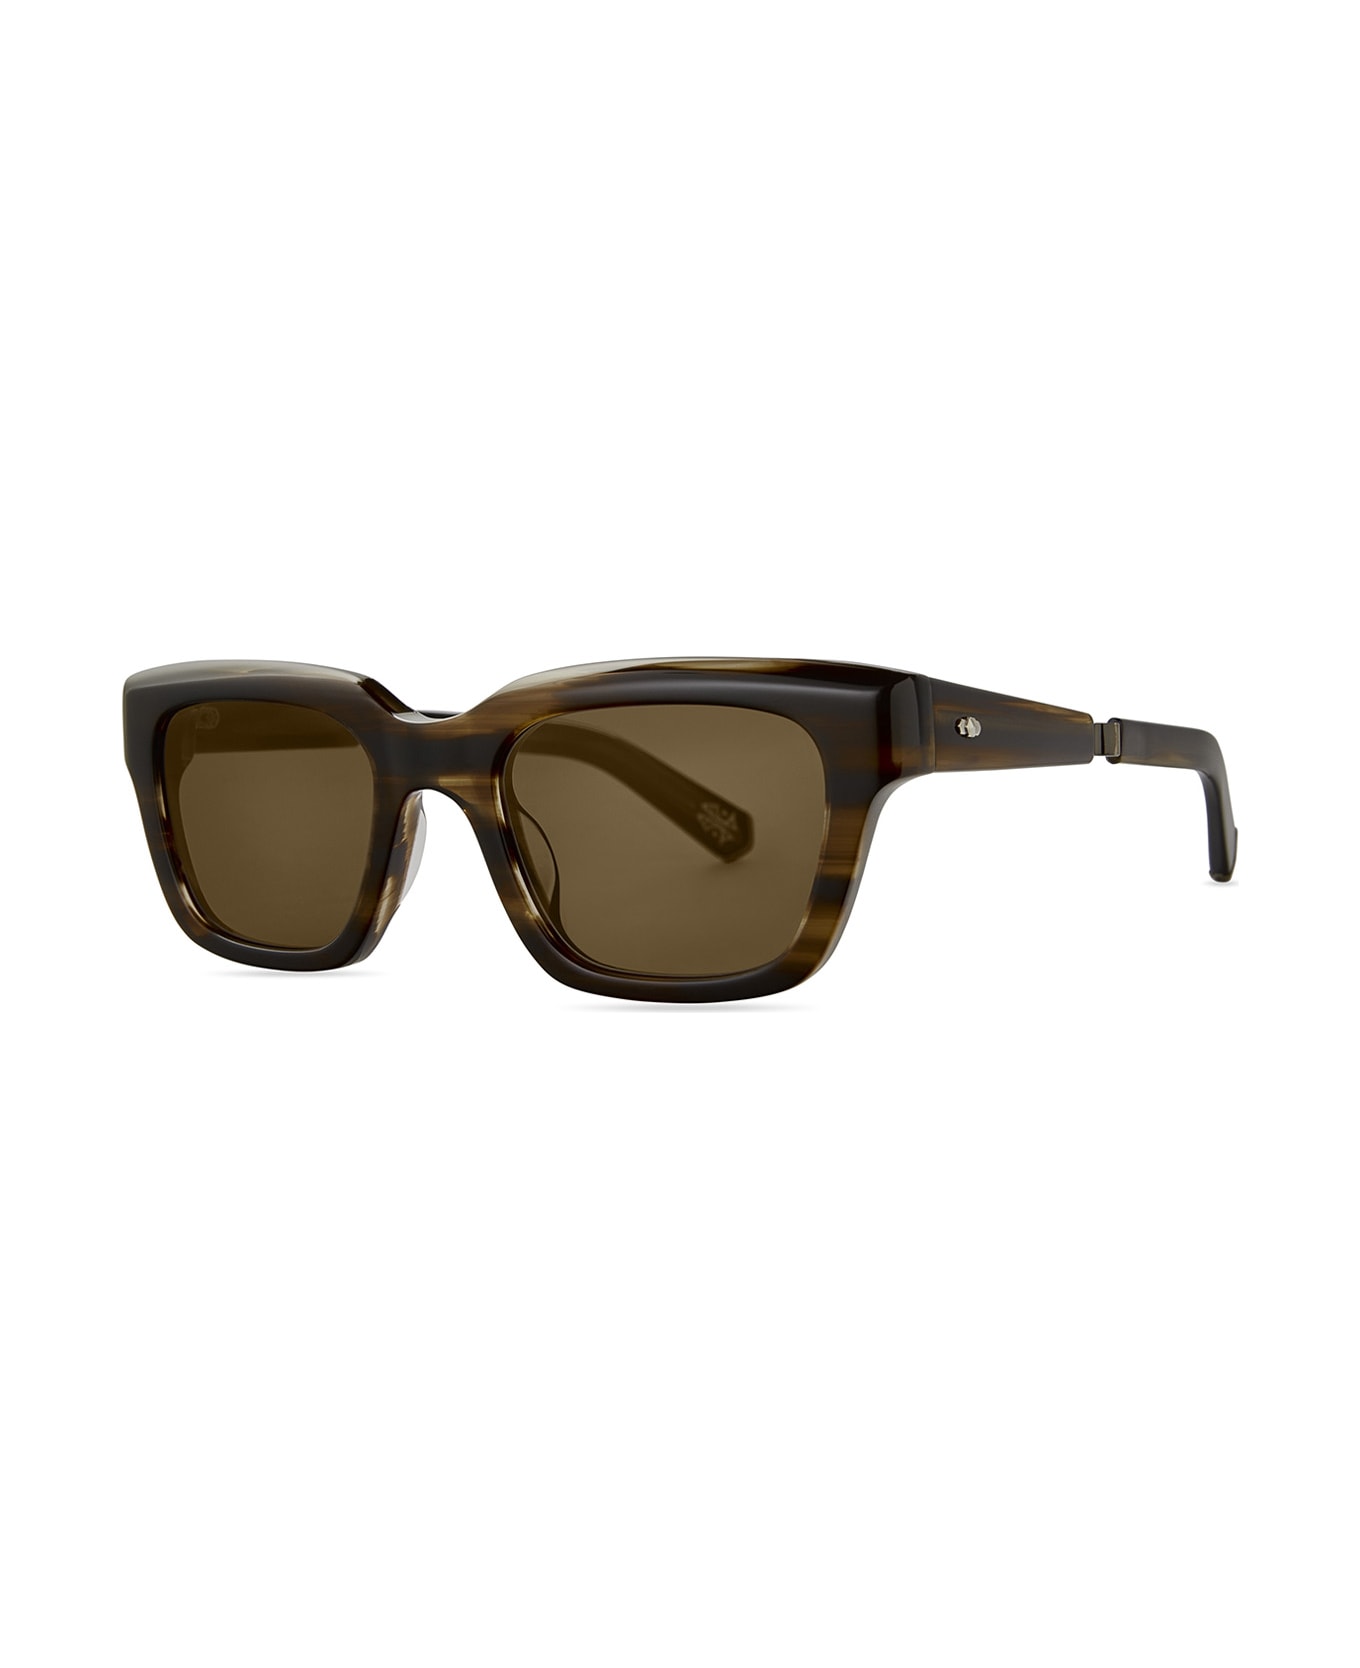 Mr. Leight Maven S Koa-white Gold/semi-flat Kona Brown Sunglasses - Koa-White Gold/Semi-Flat Kona Brown